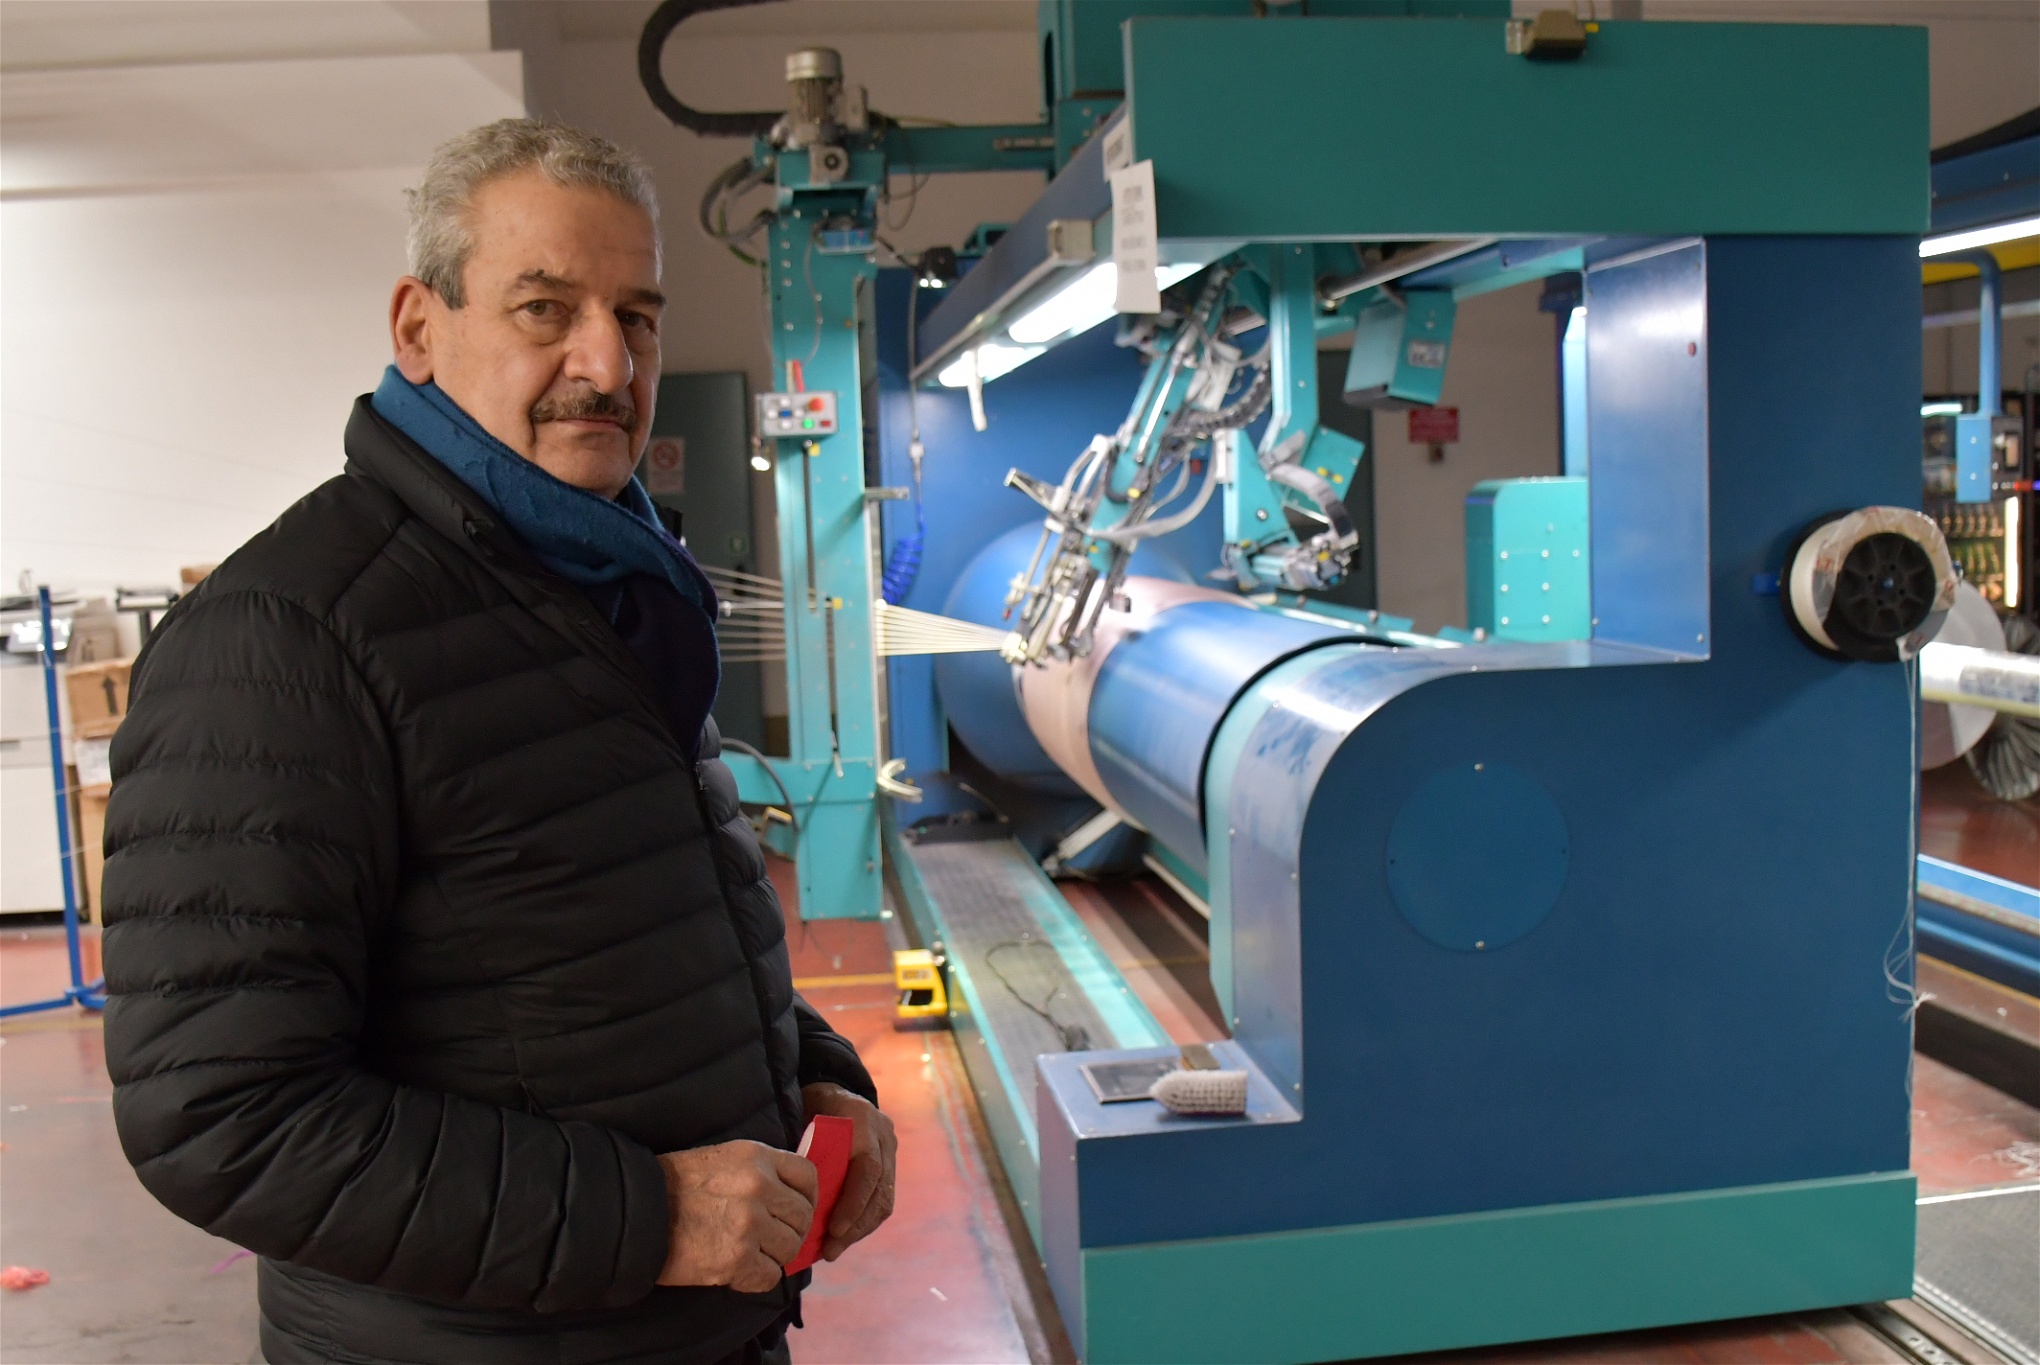  I drygt 40 år har Andrea Belli drivit ett företag som tillverkar varp på samma sätt som på fabriken där Luana D’Orazio arbetade. Foto: Christina Sandberg